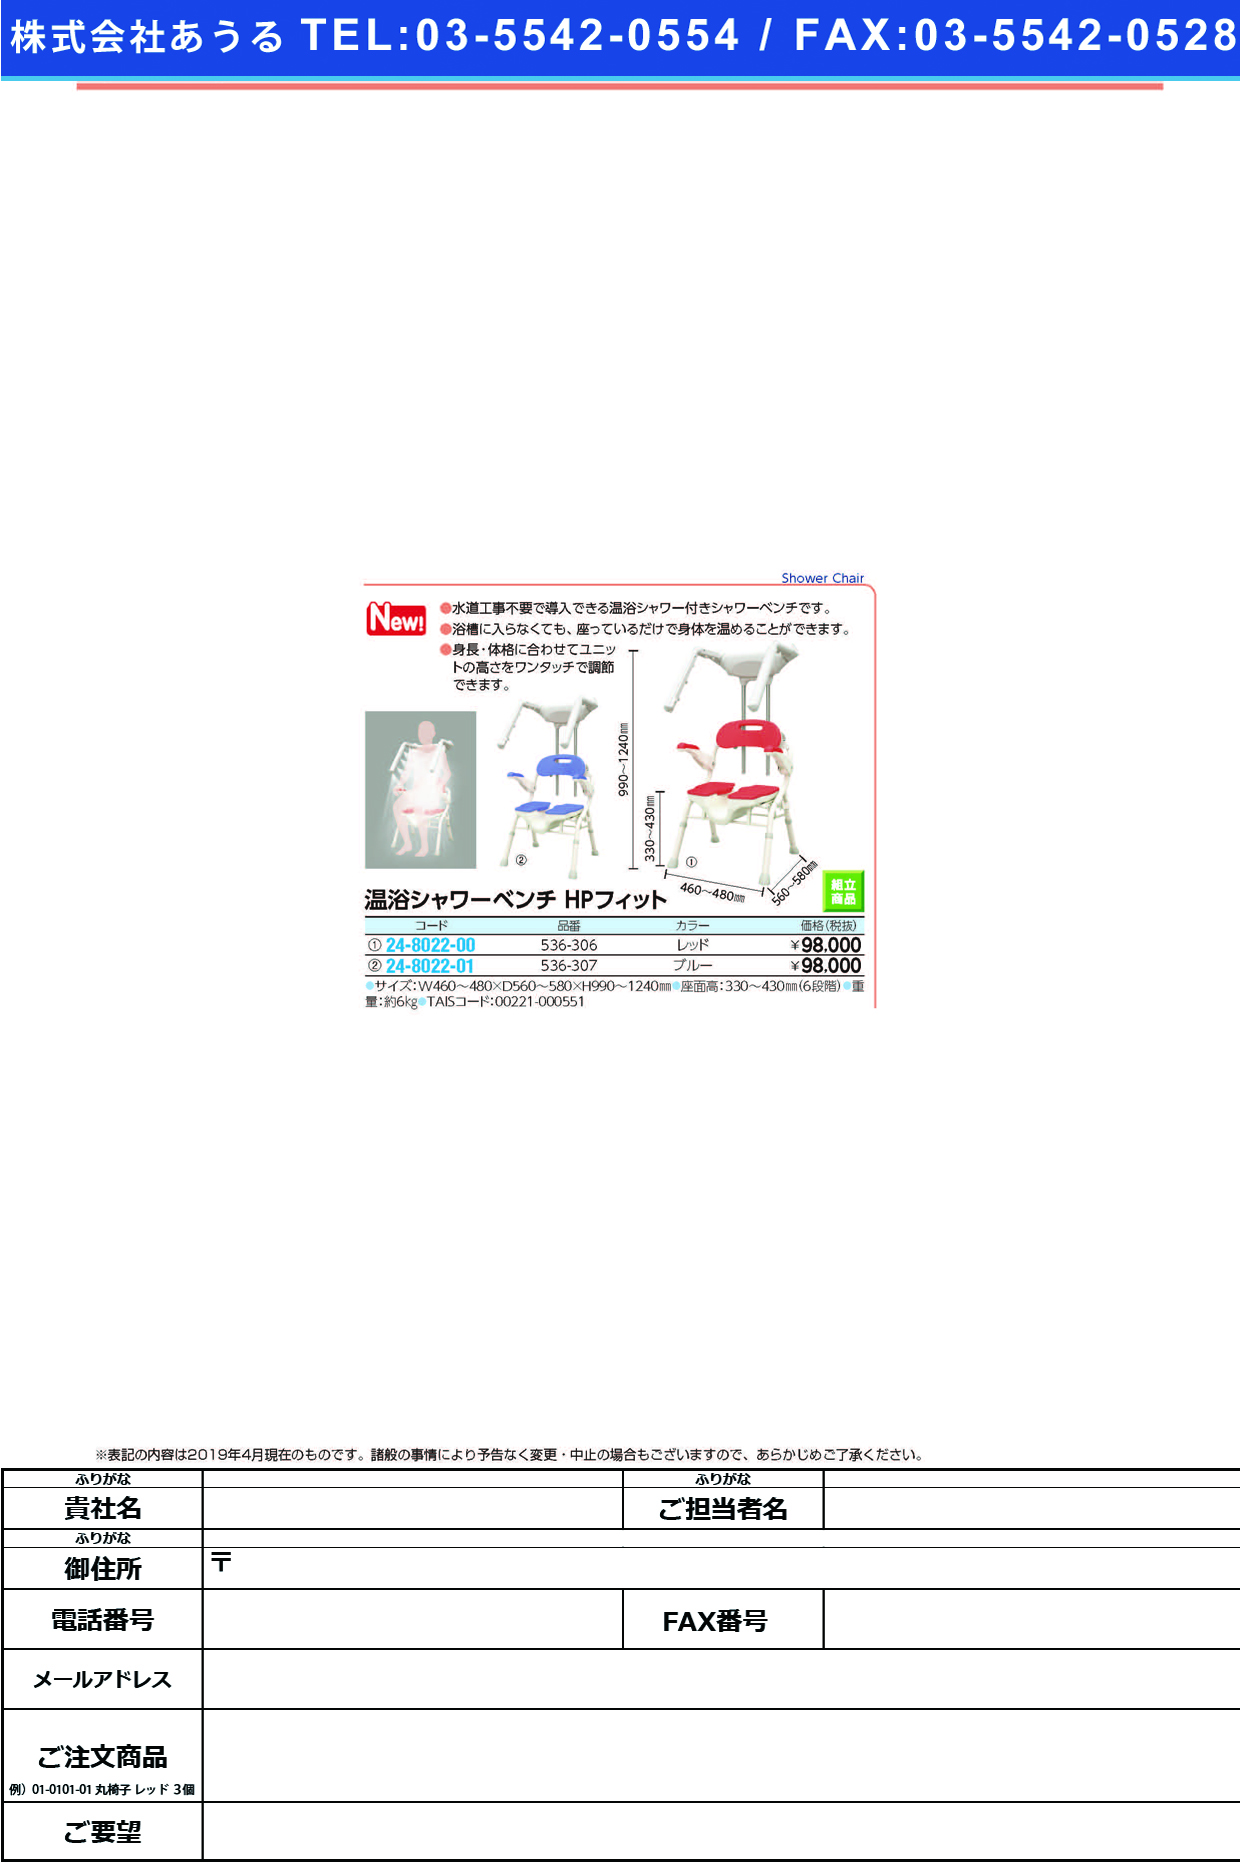 (24-8022-00)温浴シャワーベンチＨＰフィット536-306(ﾚｯﾄﾞ) ｵﾝﾖｸｼｬﾜｰﾍﾞﾝﾁHPﾌｨｯﾄ(アロン化成)【1台単位】【2019年カタログ商品】